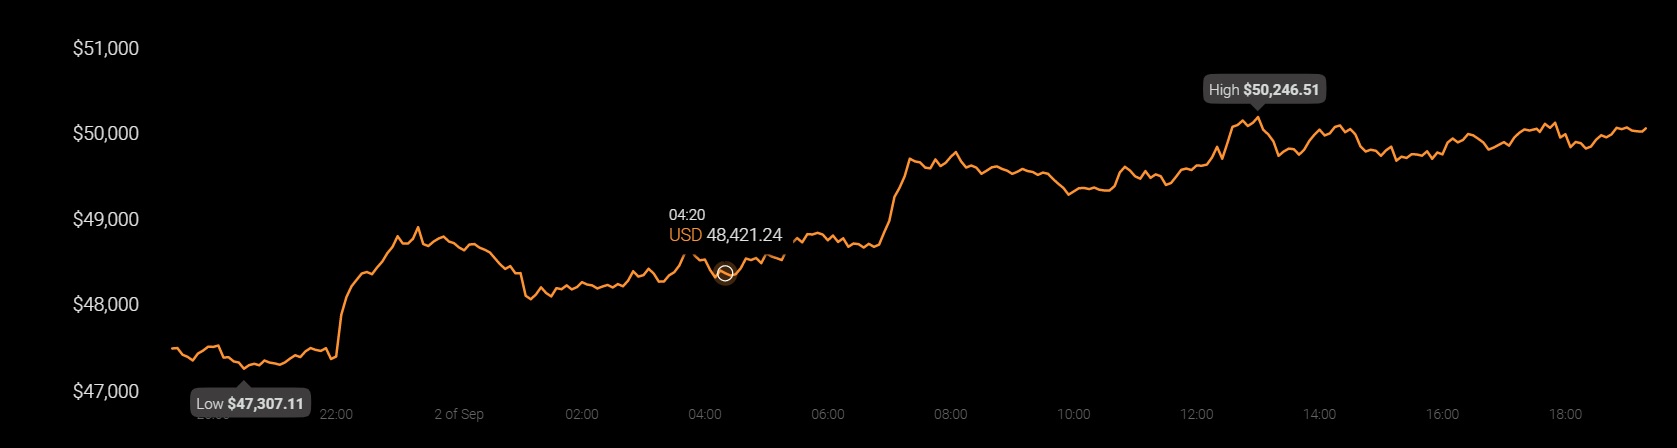 Evaluando dónde se encuentra Bitcoin, Ethereum 100 días después del colapso de mayo